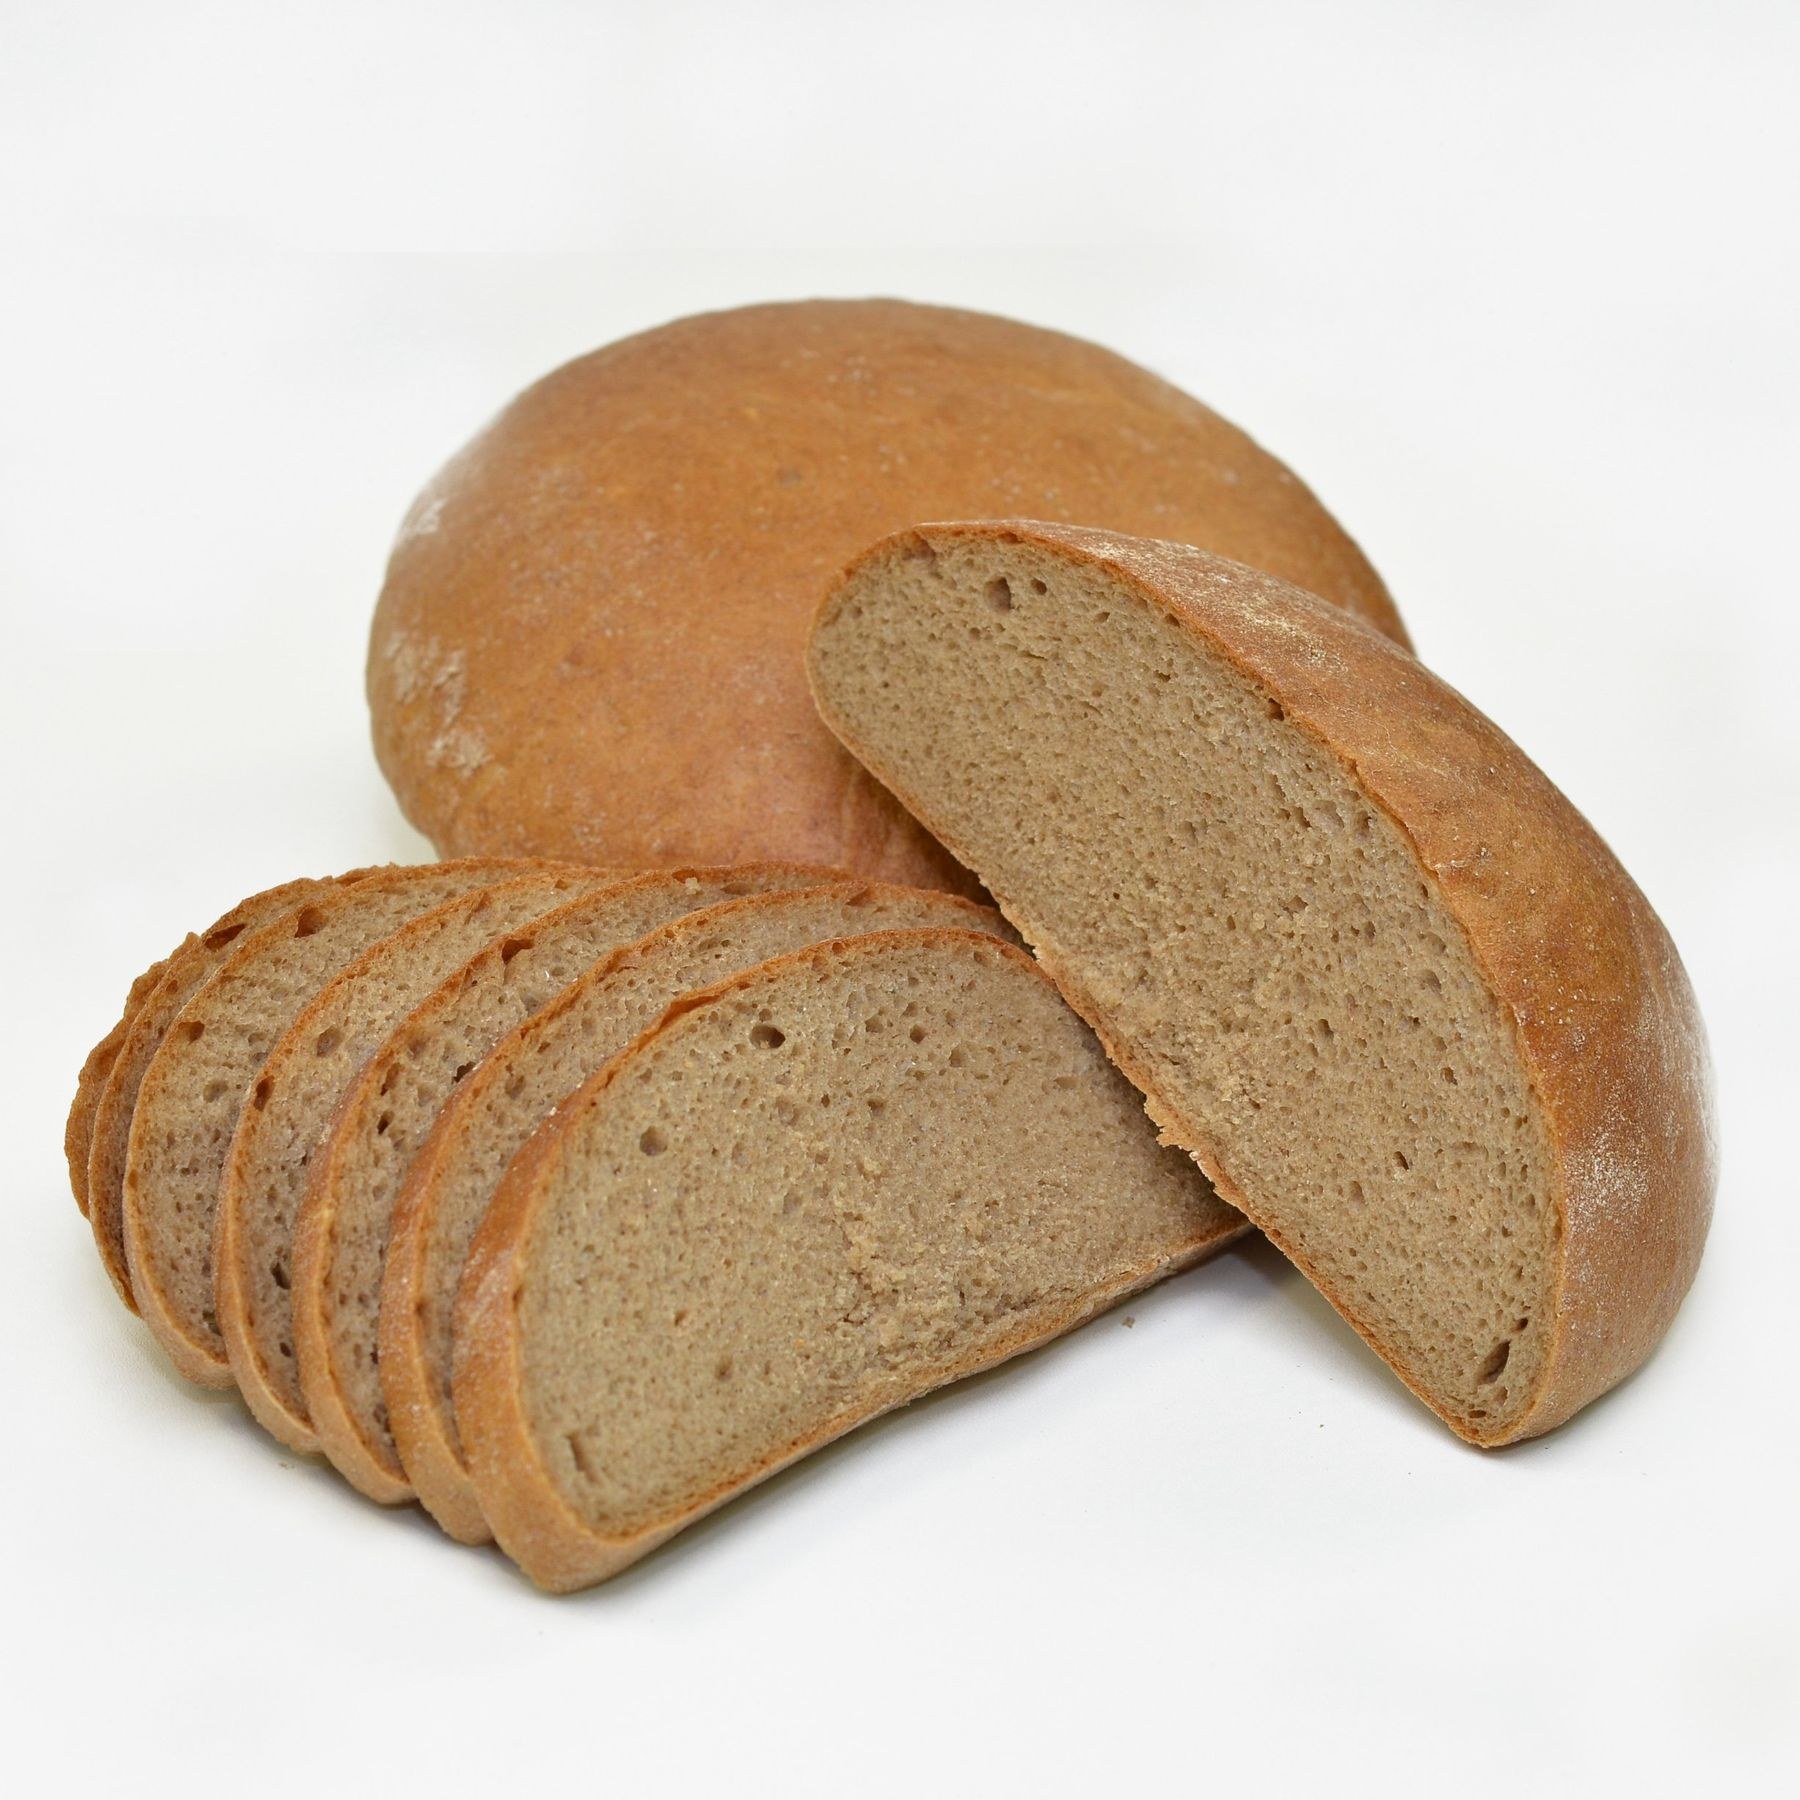 Пшеничный подовый. Хлеб ржано-пшеничный подовый. Ржано-пшеничный хлеб ржано-пшеничный хлеб. Круглый хлеб. Ржаные хлебобулочные изделия.